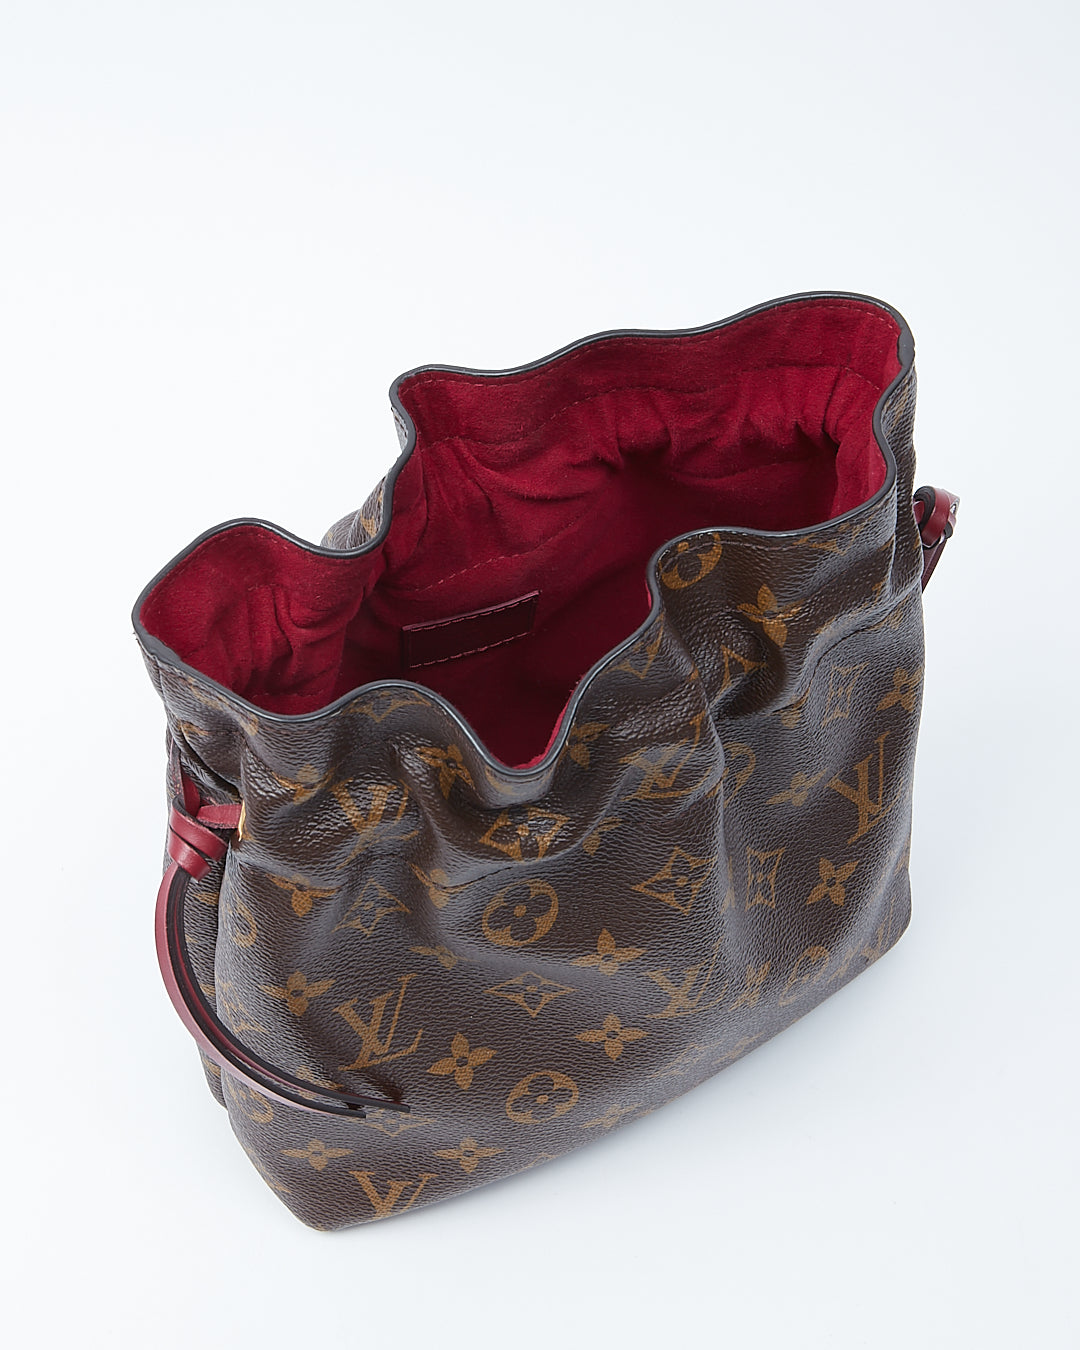 Louis Vuitton Monogram Canvas Noe Pouch Bag